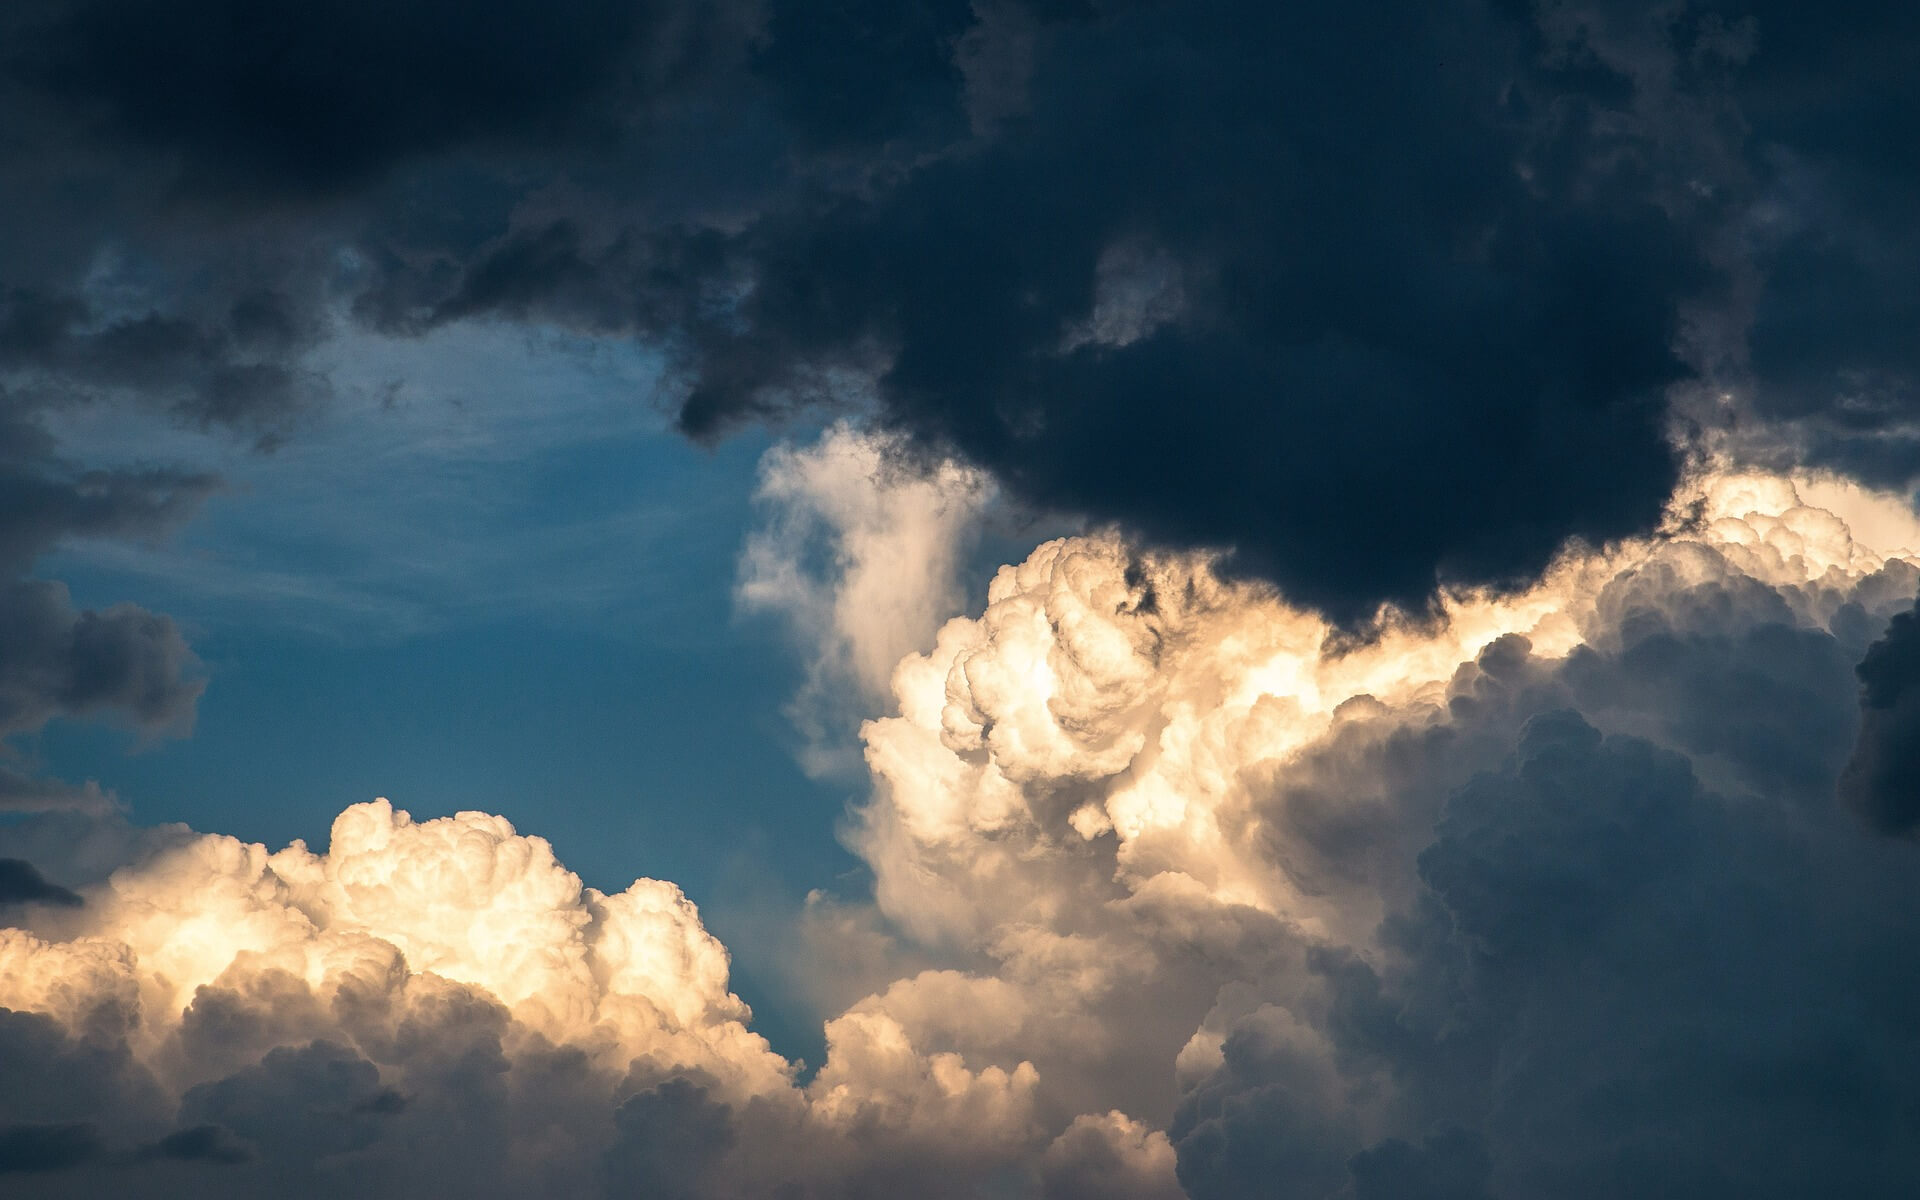 Облачная инженерия. Некоторые облака могут достигать огромных размеров. Например, грозовые облака могут вырастать на высоту более 12 километров и иметь диаметр свыше 30 километров. Фото.